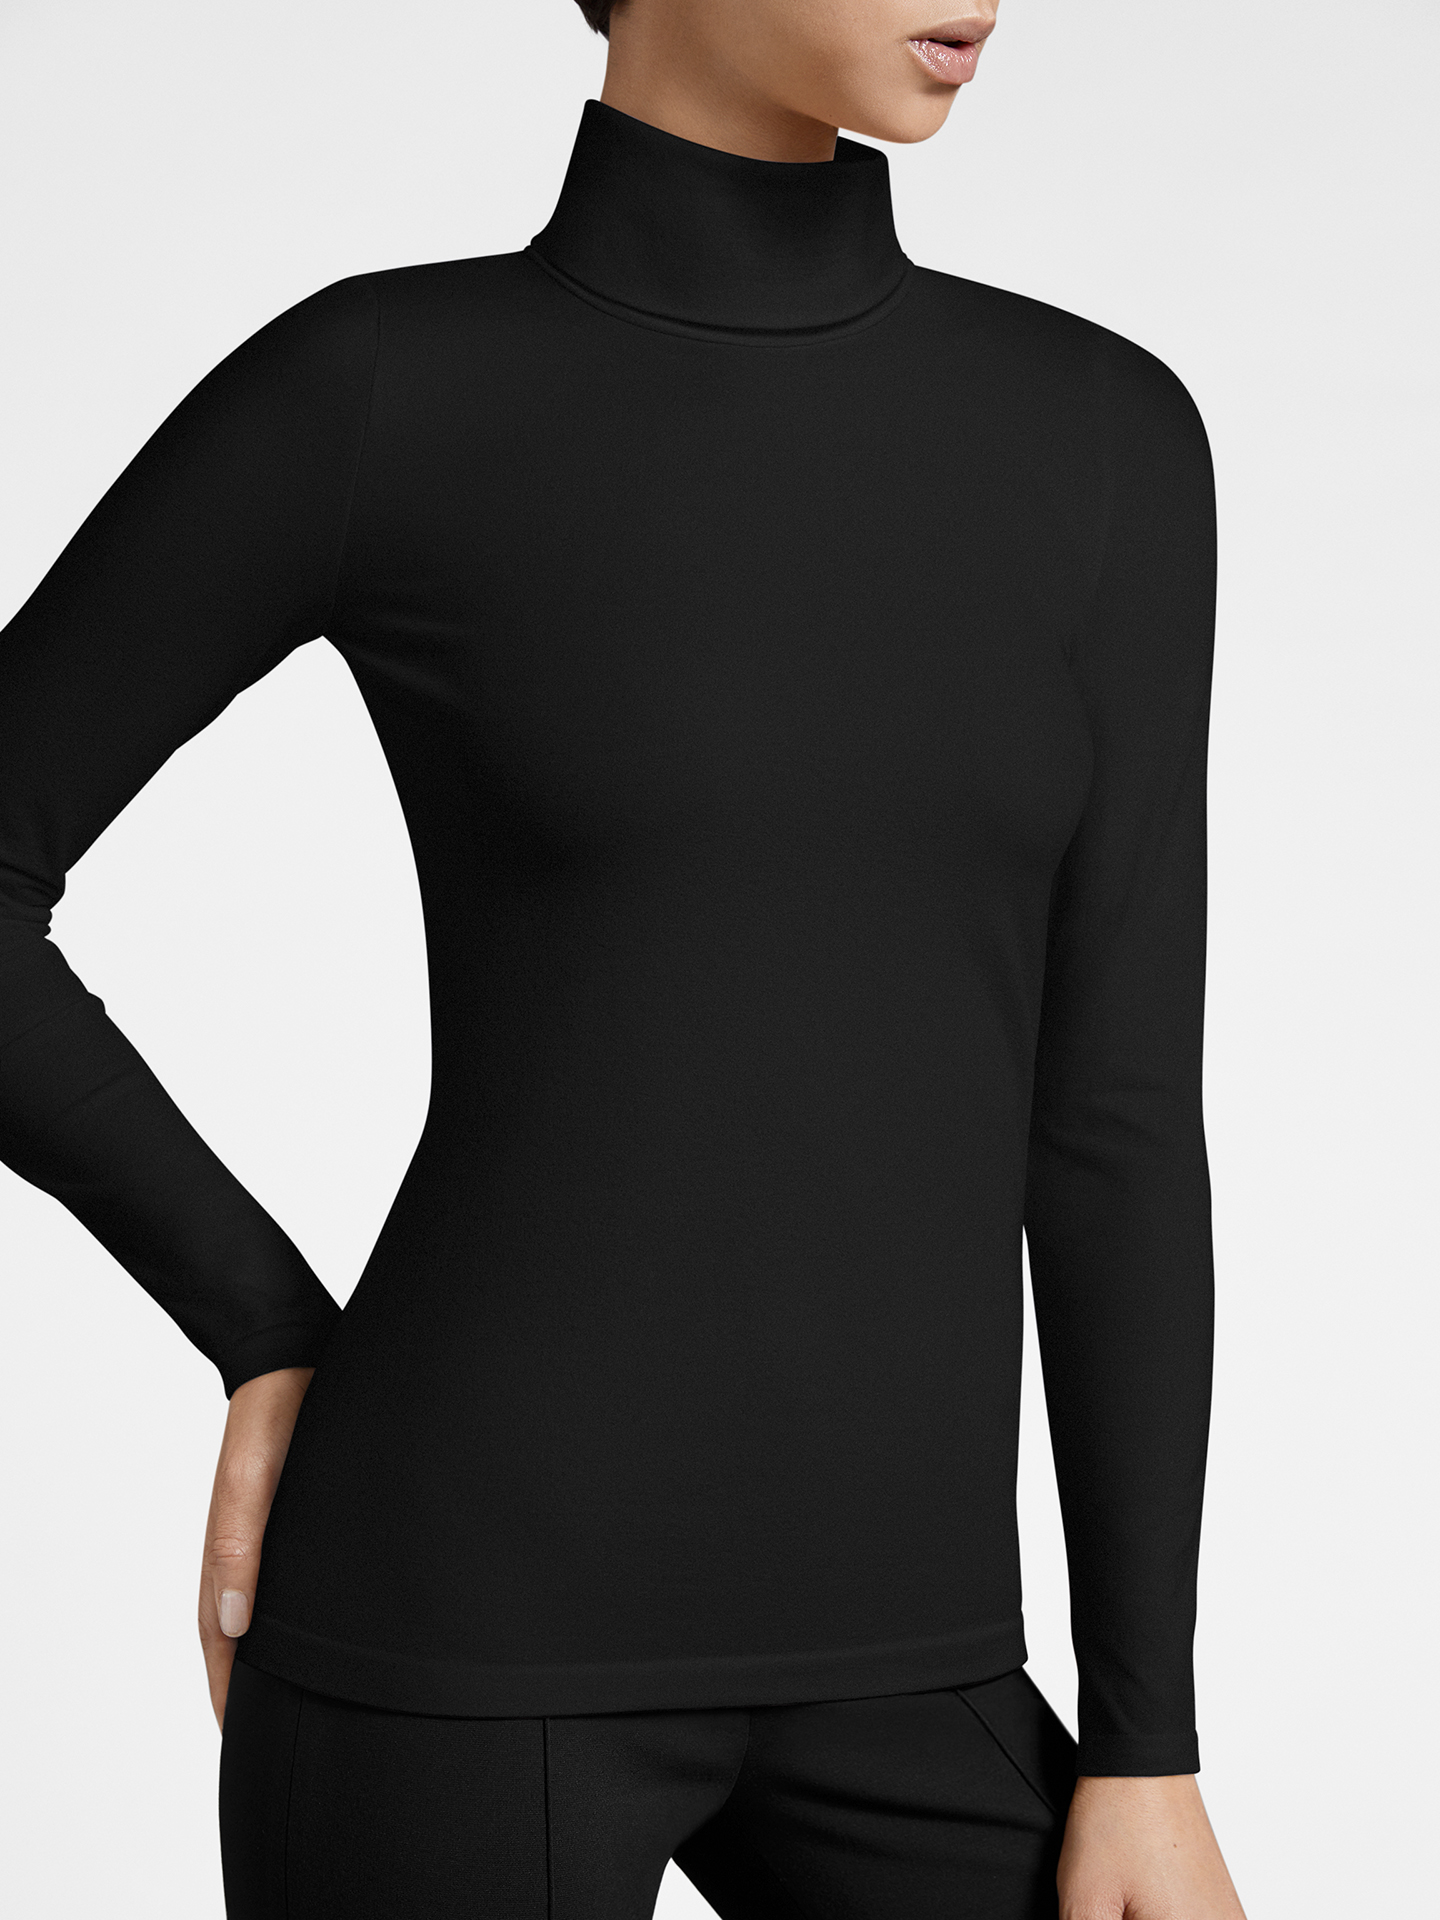 Wolford - Turtleneck Top Long Sleeves, Frau, black, Größe: S günstig online kaufen